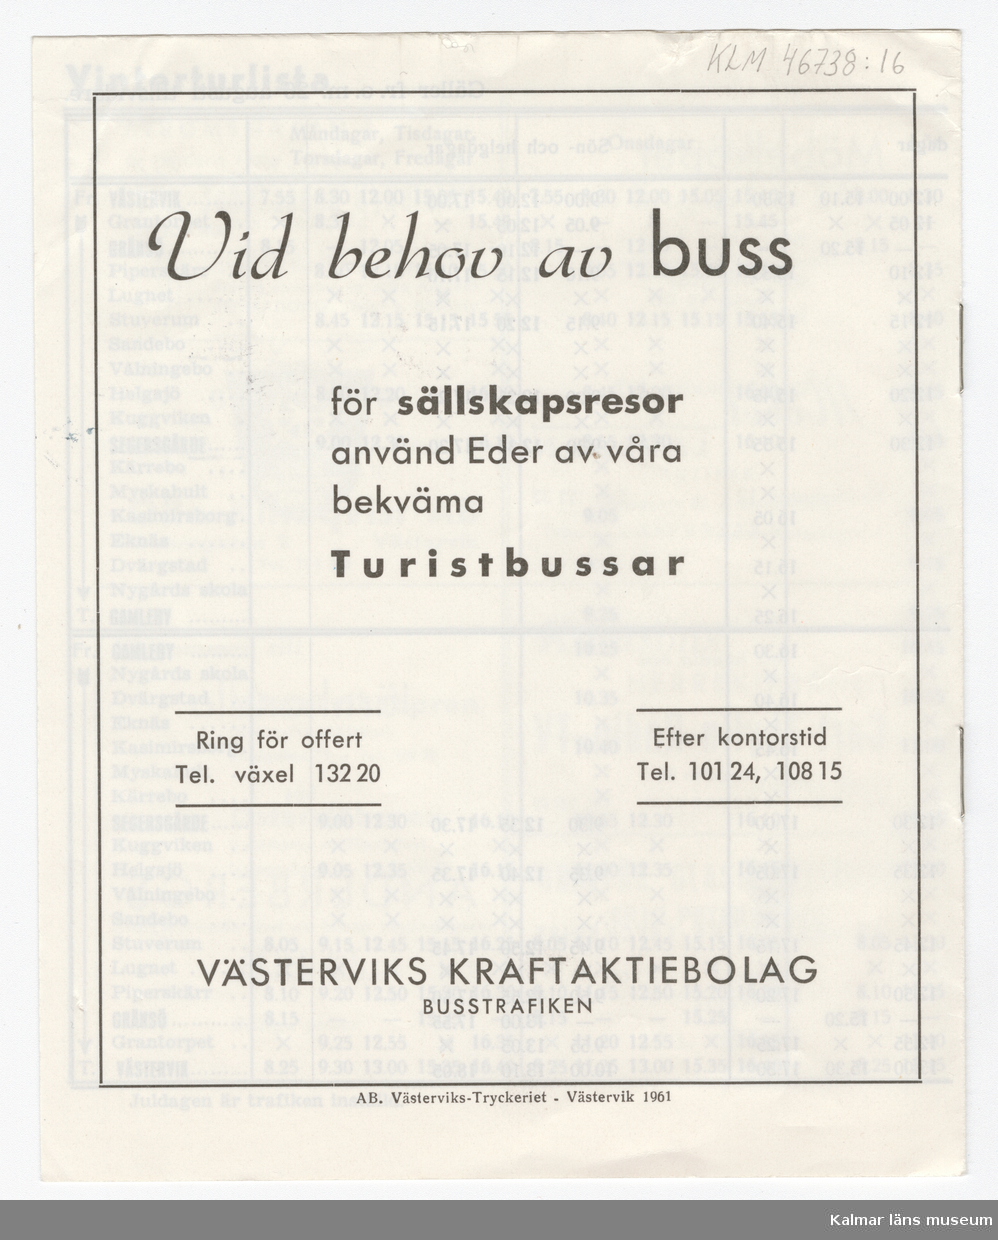 KLM 46738:16. Tidtabell, Turlista. Tryckt busstidtabell av vitt papper med svart text. Häfte med flera sidor. Tabeller med destination, dagar, tider samt hållplater. I häftet finns även reklam för olika verksamheter i Västervik. Titel: TURLISTA för Linje 4.